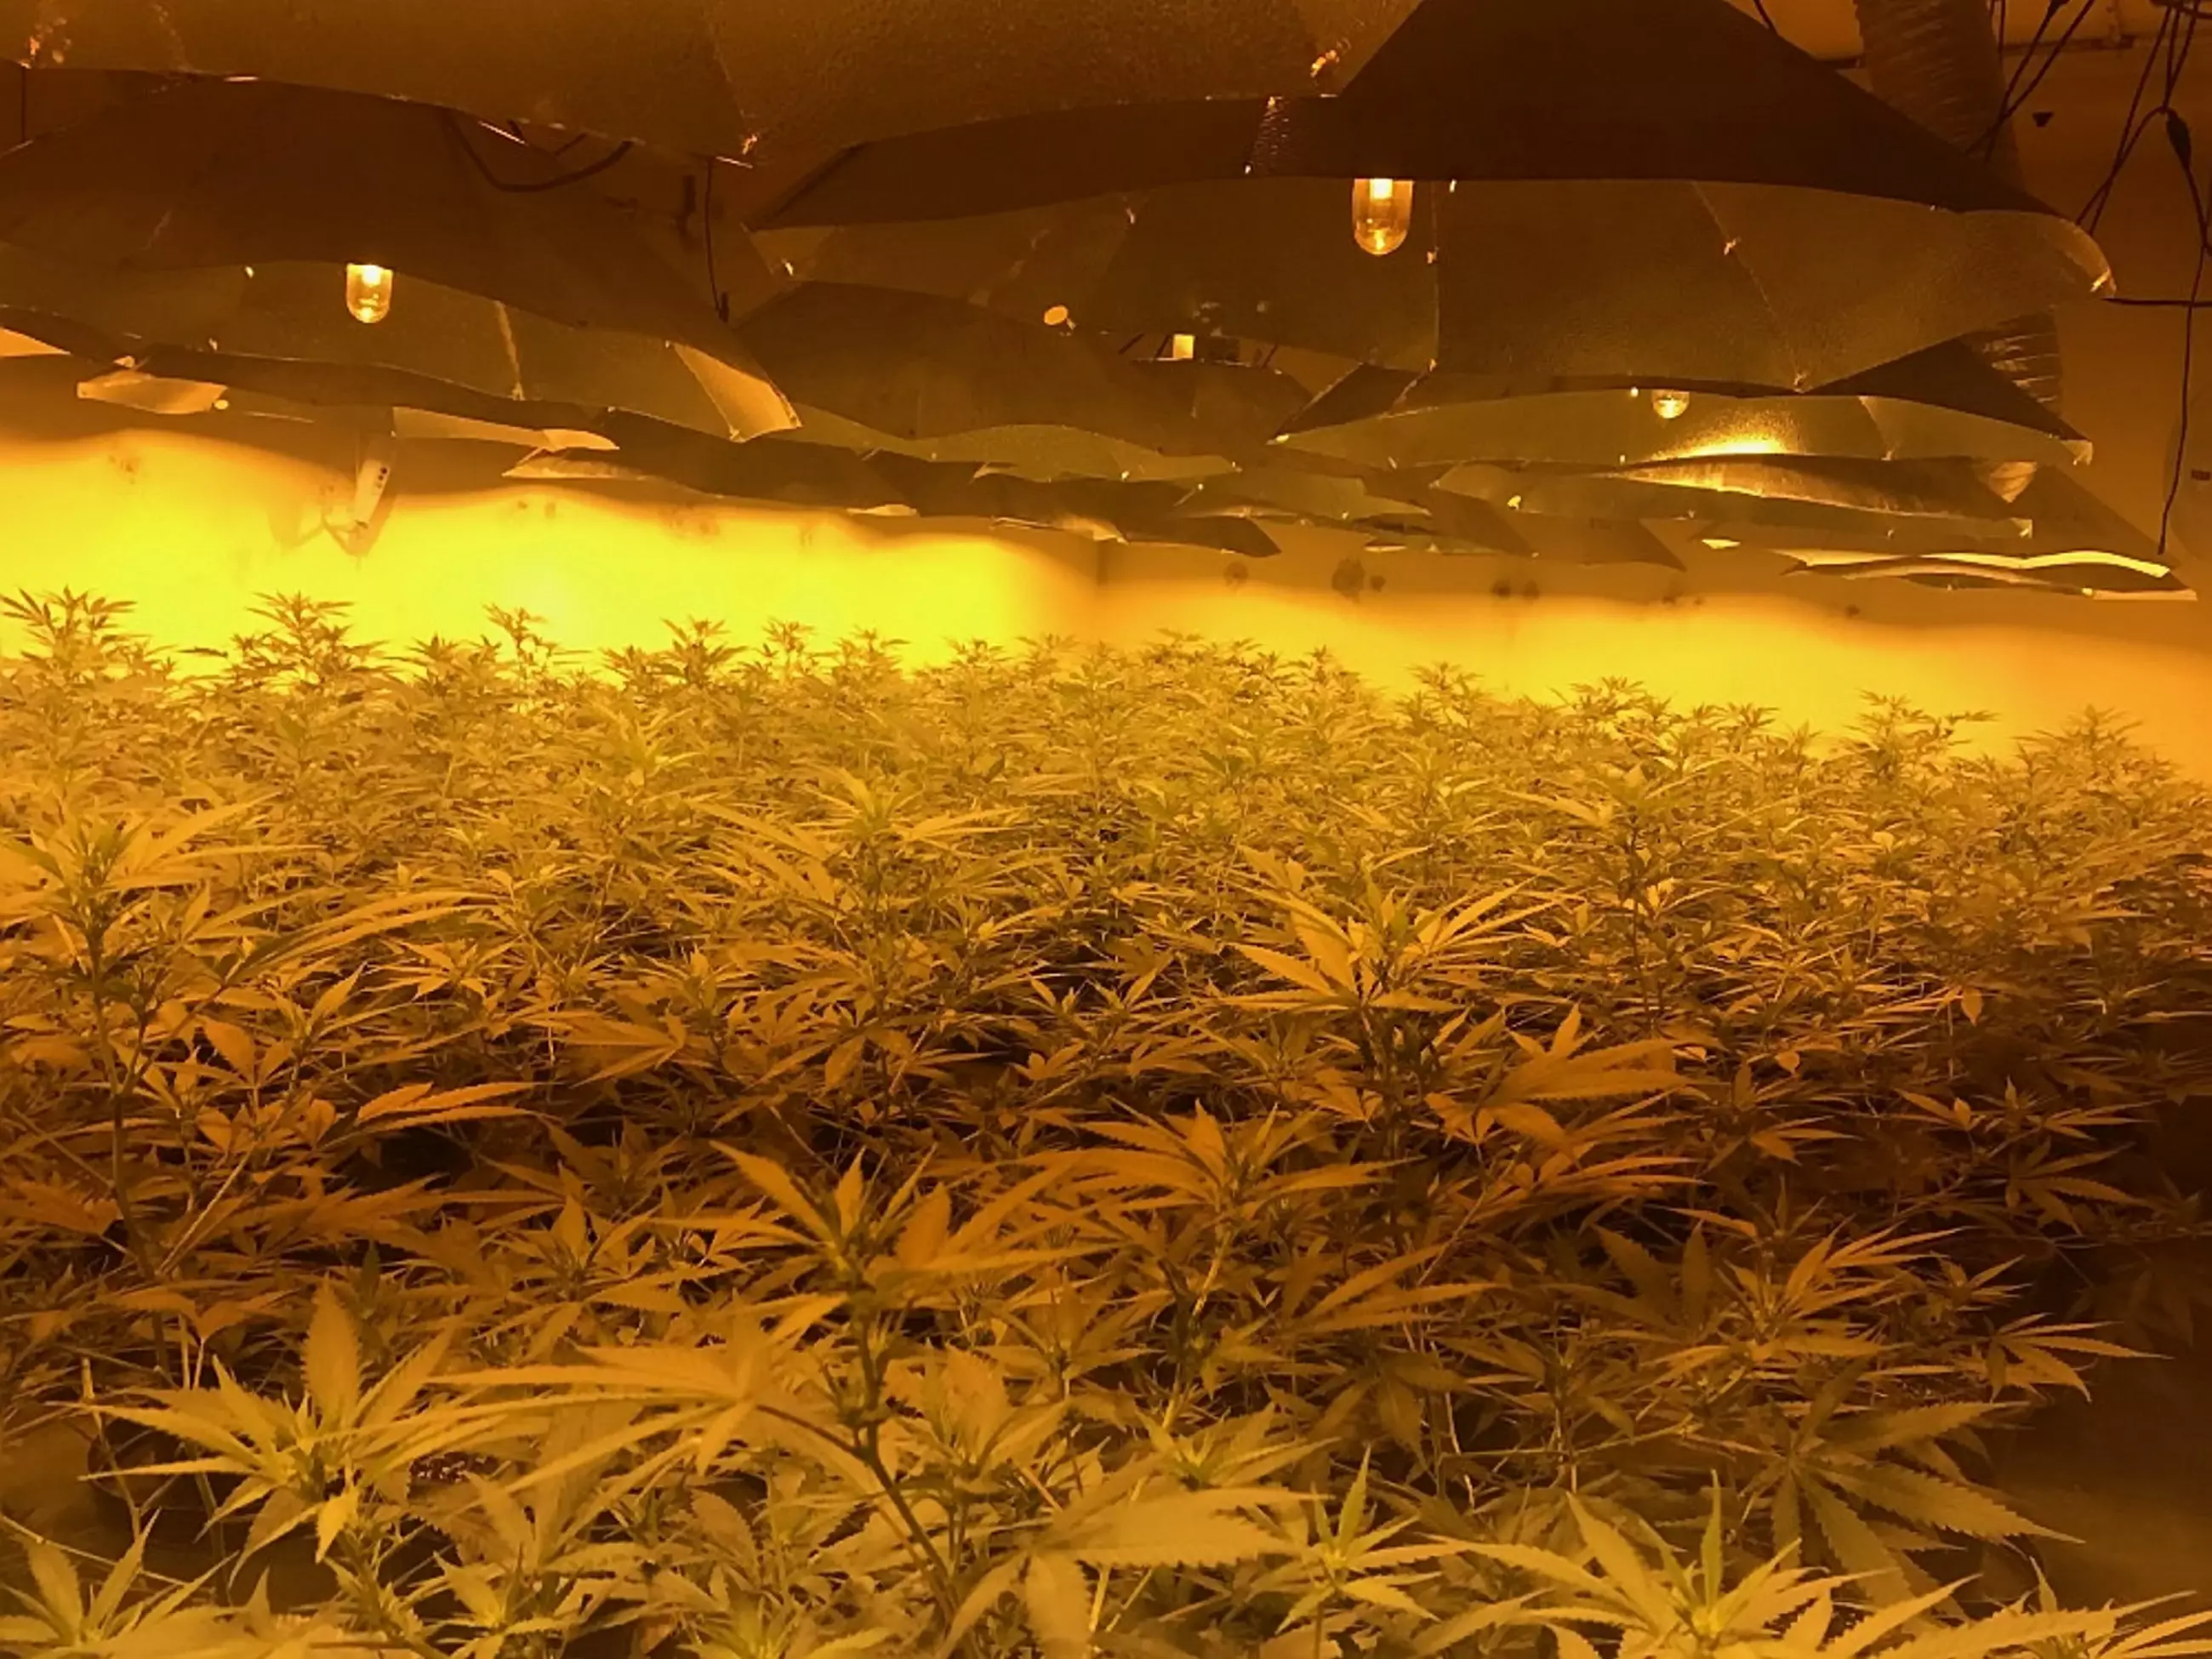 Police Find £1 Million Worth Of Cannabis In Underground Bunker 